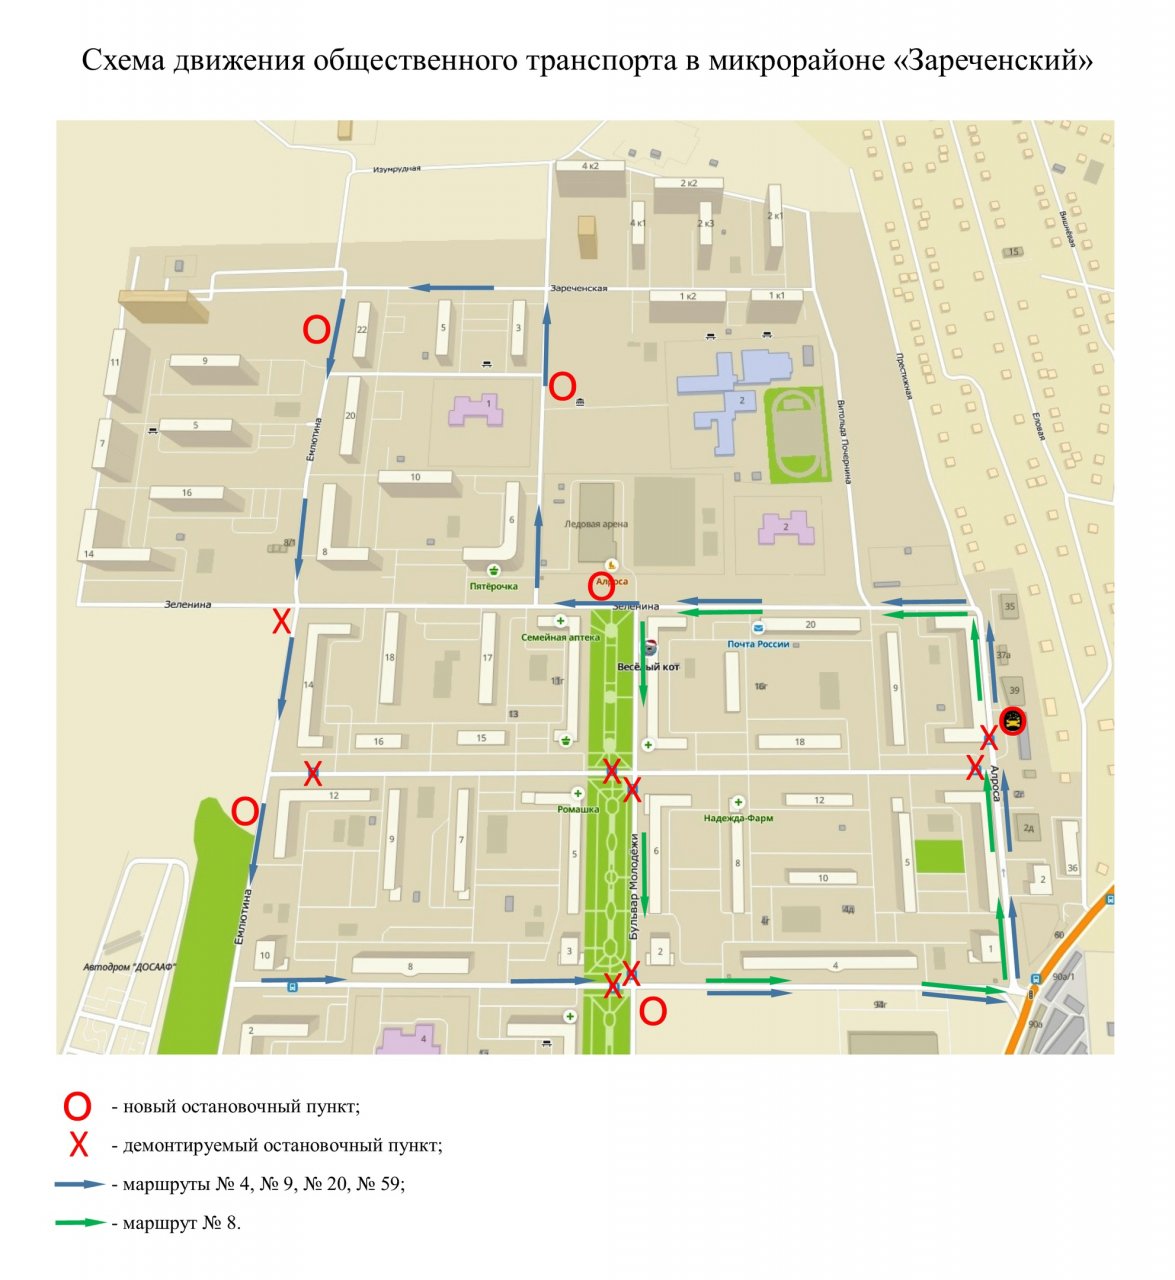 Жителям Зареченского микрорайона предлагают обсудить новую транспортную схему